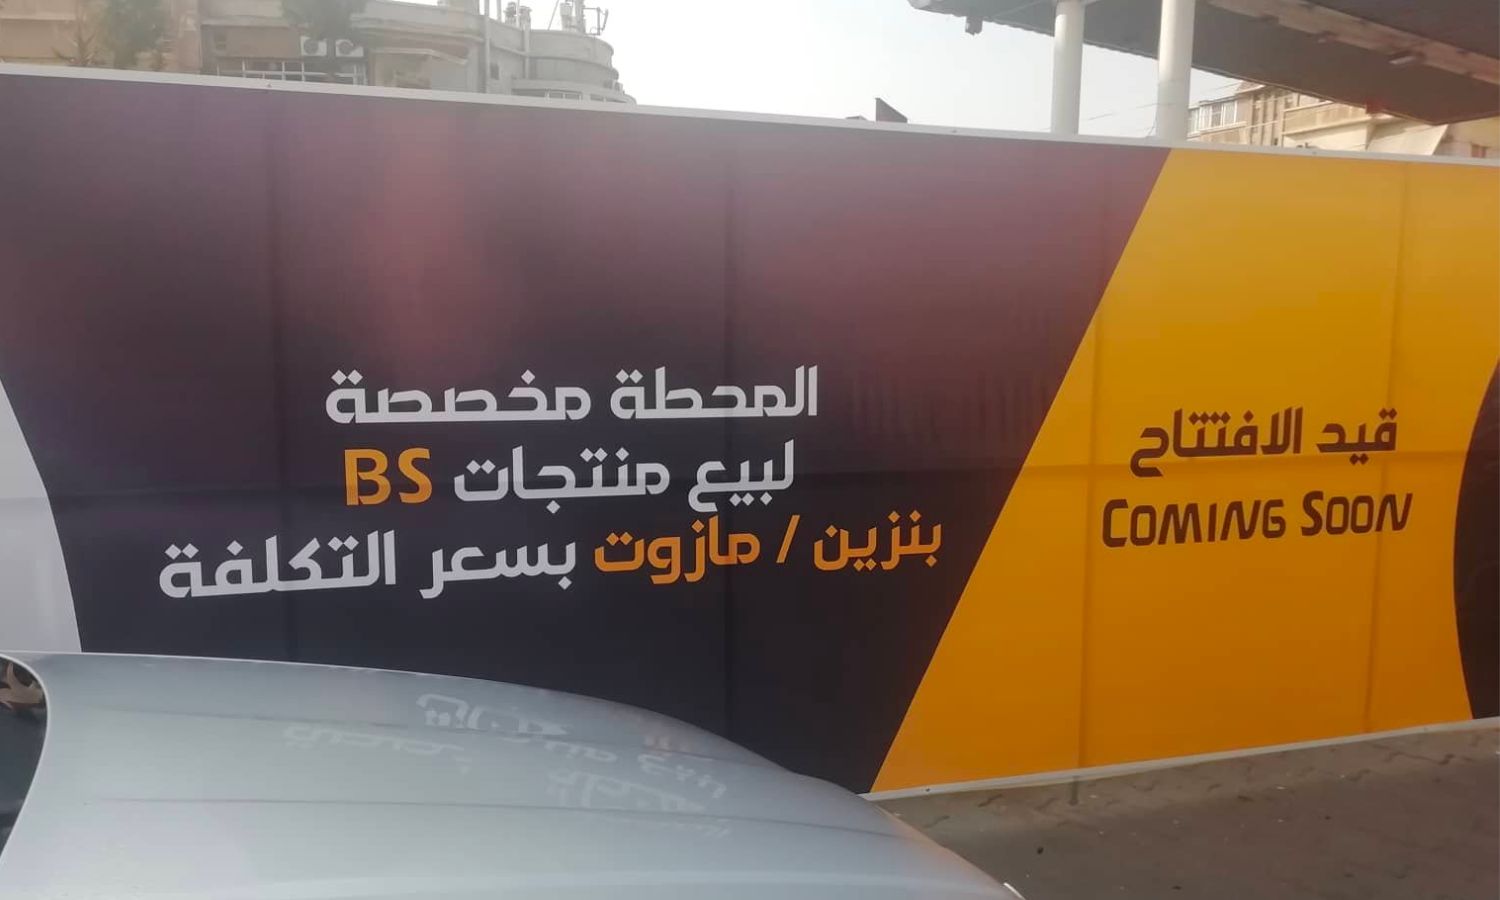 محطة وقود قيد التجهيز في دمشق تابعة لشركة "B.S" في 7 من كانون الأول 2022 (الباحث السوري كرم شعار)